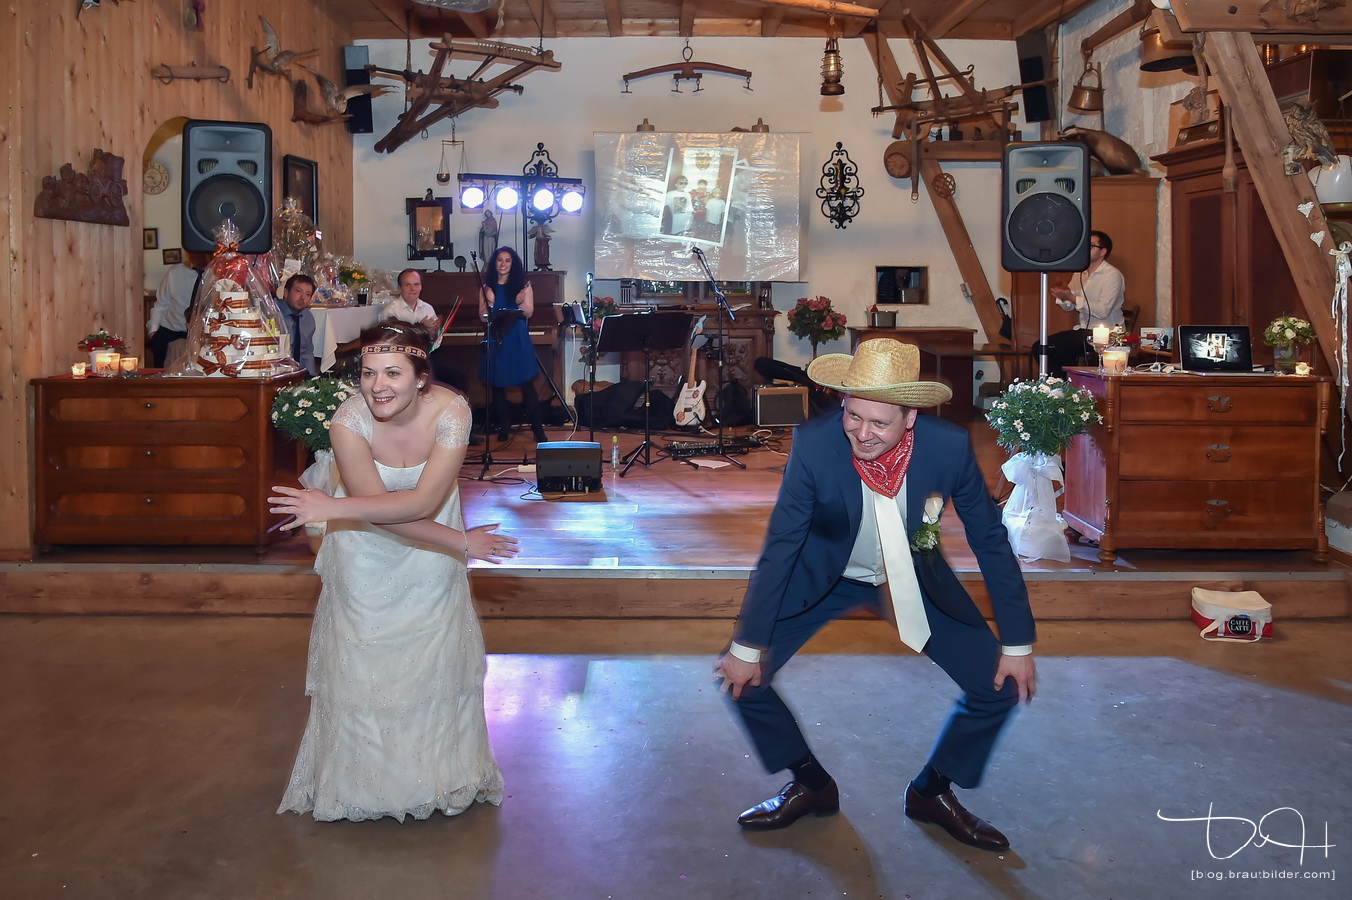 Brautpaar legt flotte Sohle beim Hochzeitstanz hin. Der Hochzeitsfotograf haelt alles auf Bildern fest. Der Hochzeitsfotograf aus Nuernberg im Gasthaus Englert.